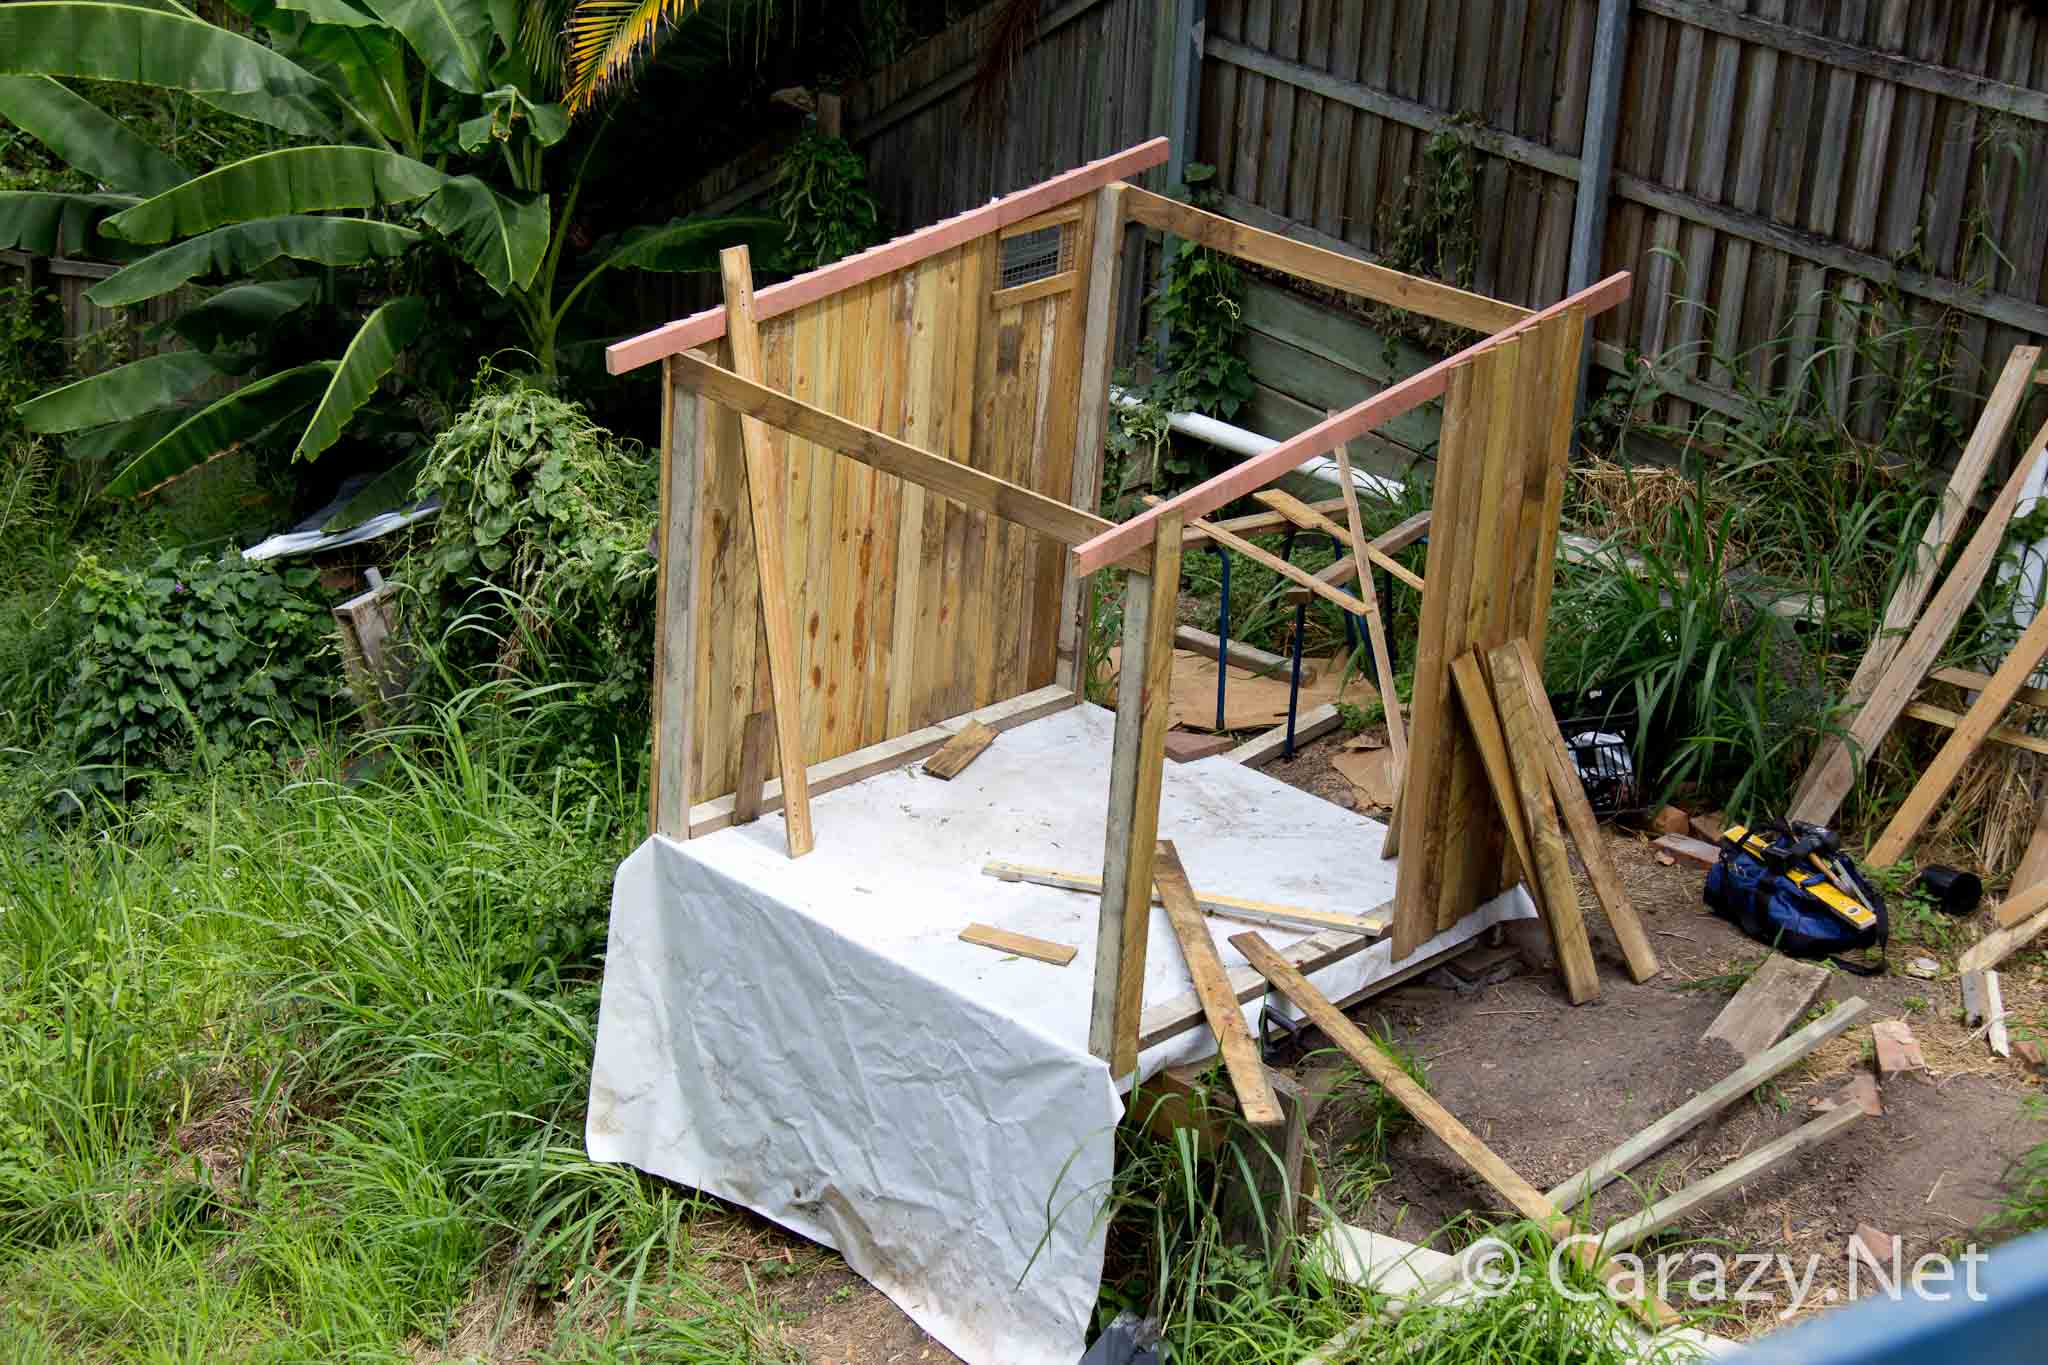 DIY Chicken coop build - Building the side walls